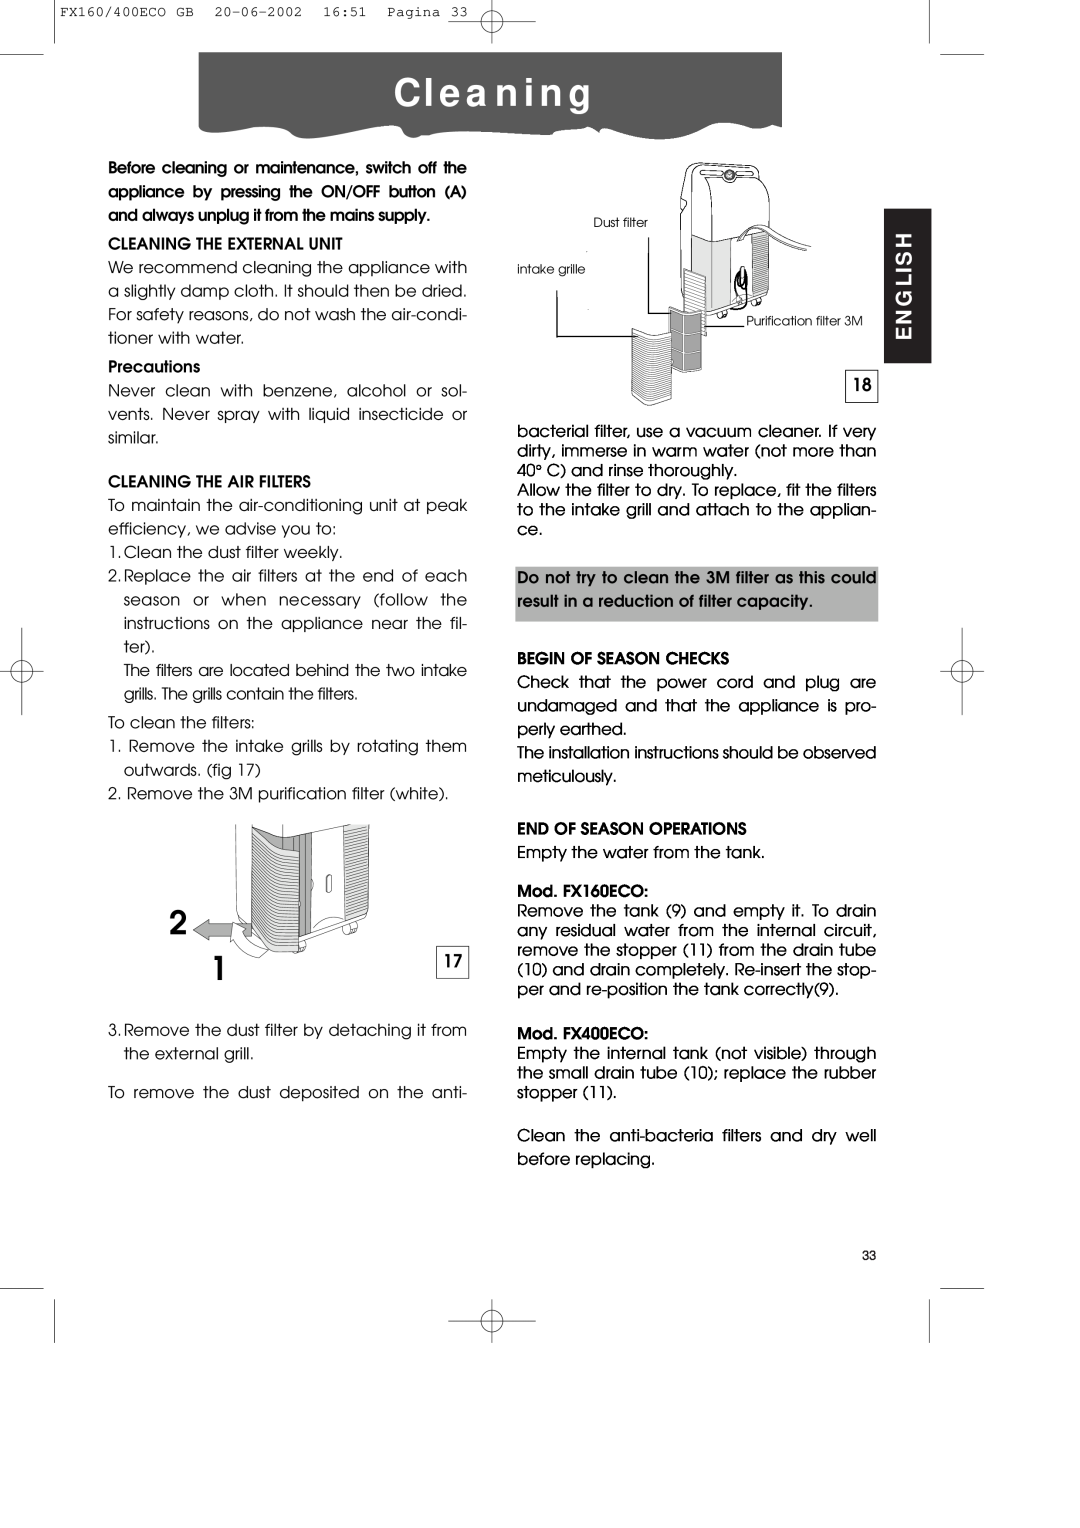 DeLonghi FX400ECO manual C l e a n i n g, English 